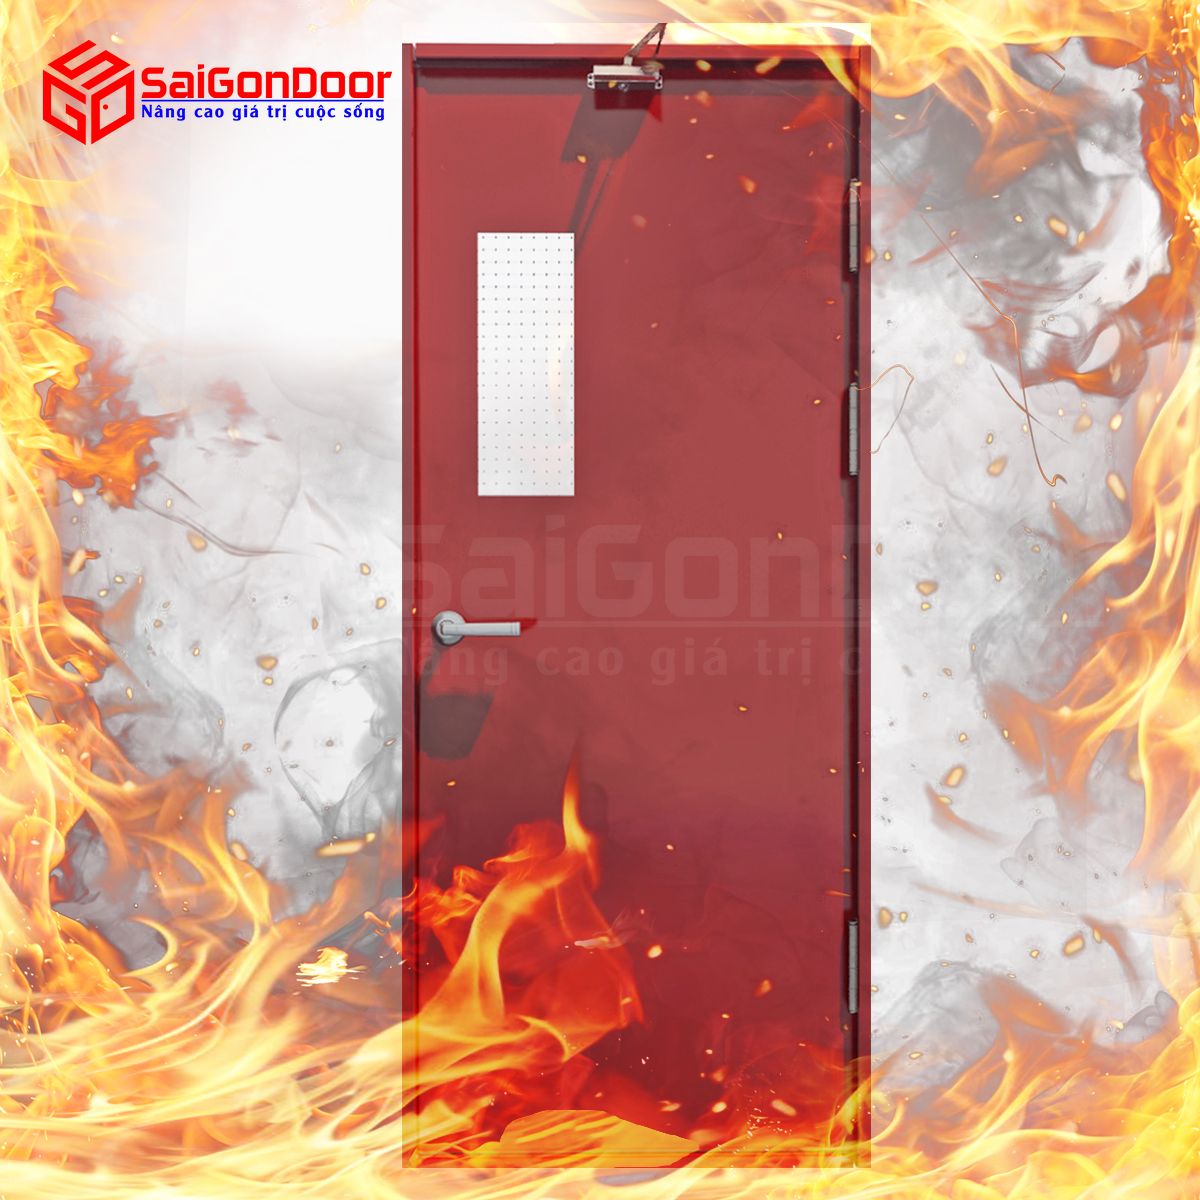 Để đảm bảo tính hiệu quả, cửa thép chống cháy cần kết hợp với một số phụ kiện phù hợp